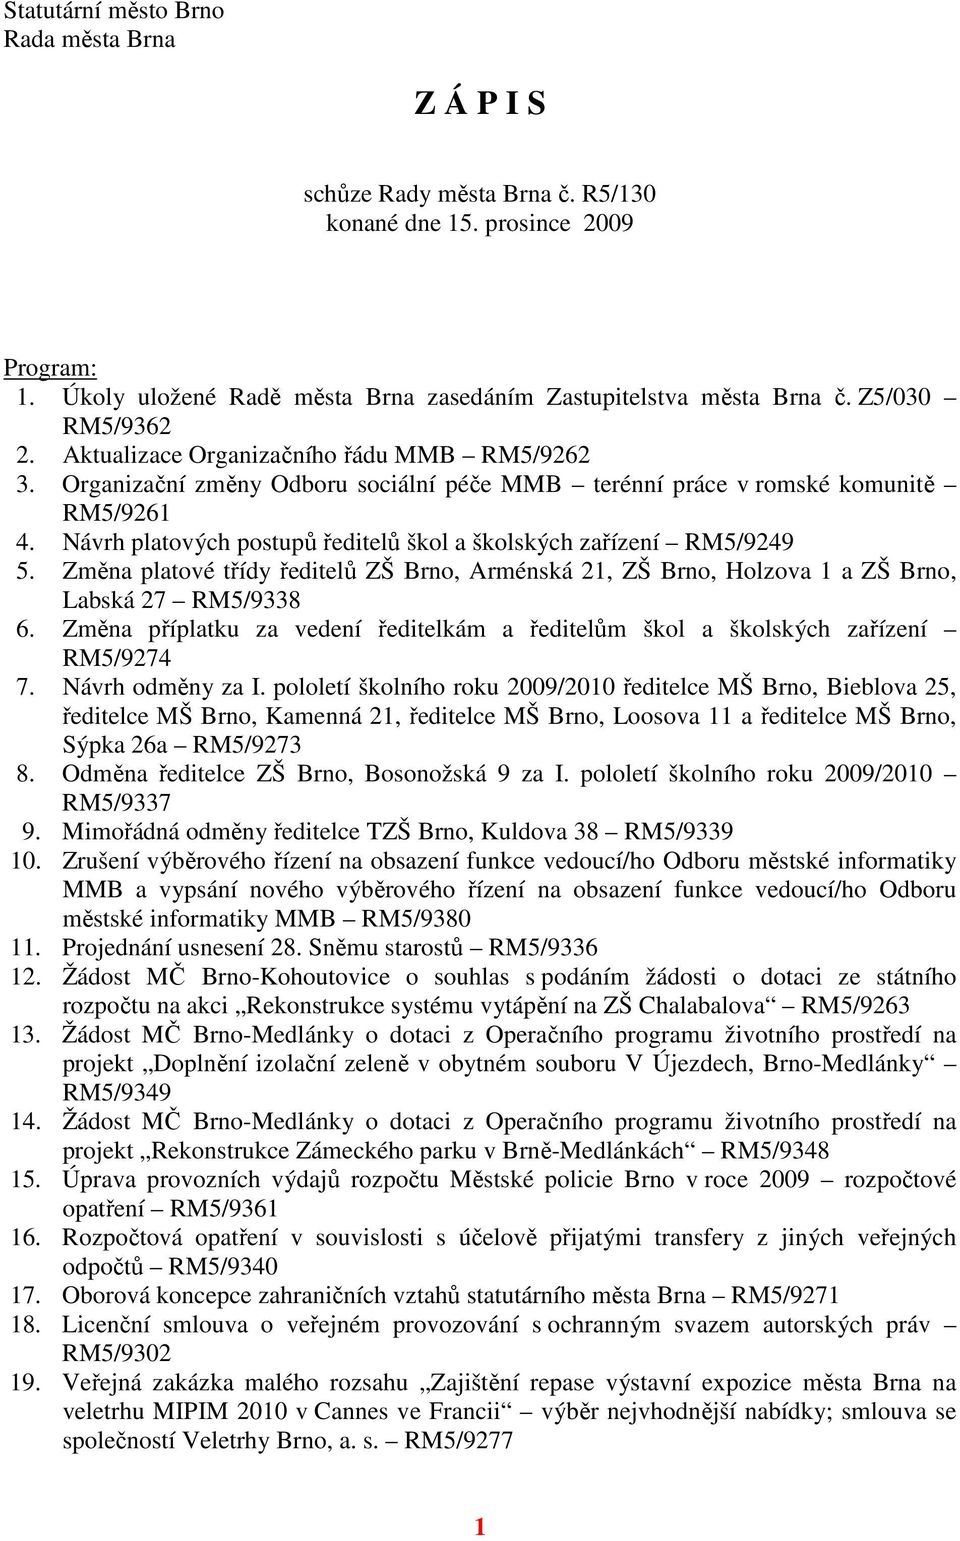 Návrh platových postupů ředitelů škol a školských zařízení RM5/9249 5. Změna platové třídy ředitelů ZŠ Brno, Arménská 21, ZŠ Brno, Holzova 1 a ZŠ Brno, Labská 27 RM5/9338 6.